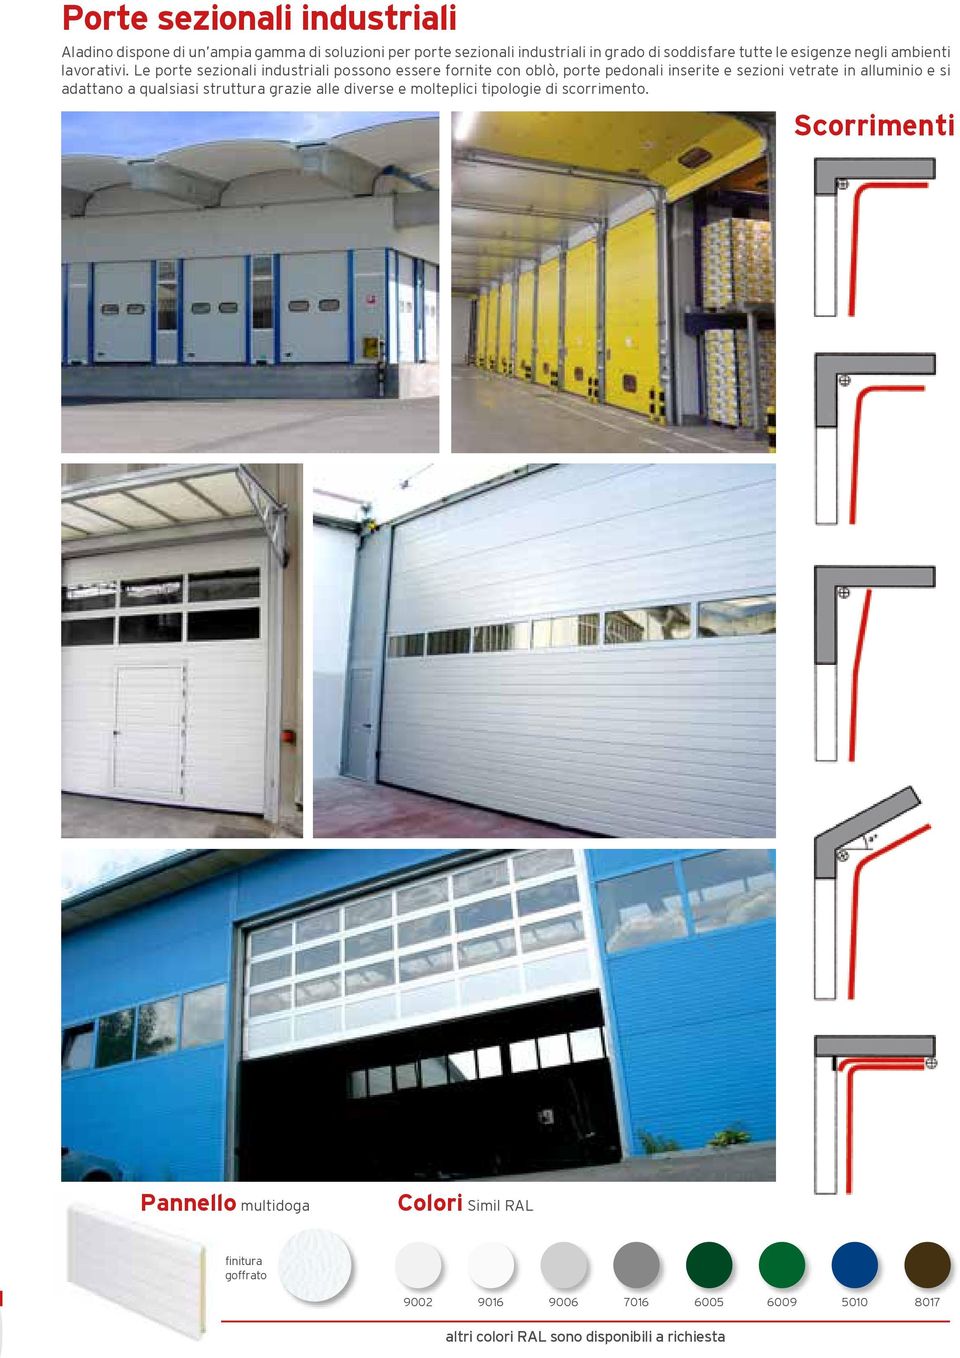 Le porte sezionali industriali possono essere fornite con oblò, porte pedonali inserite e sezioni vetrate in alluminio e si adattano